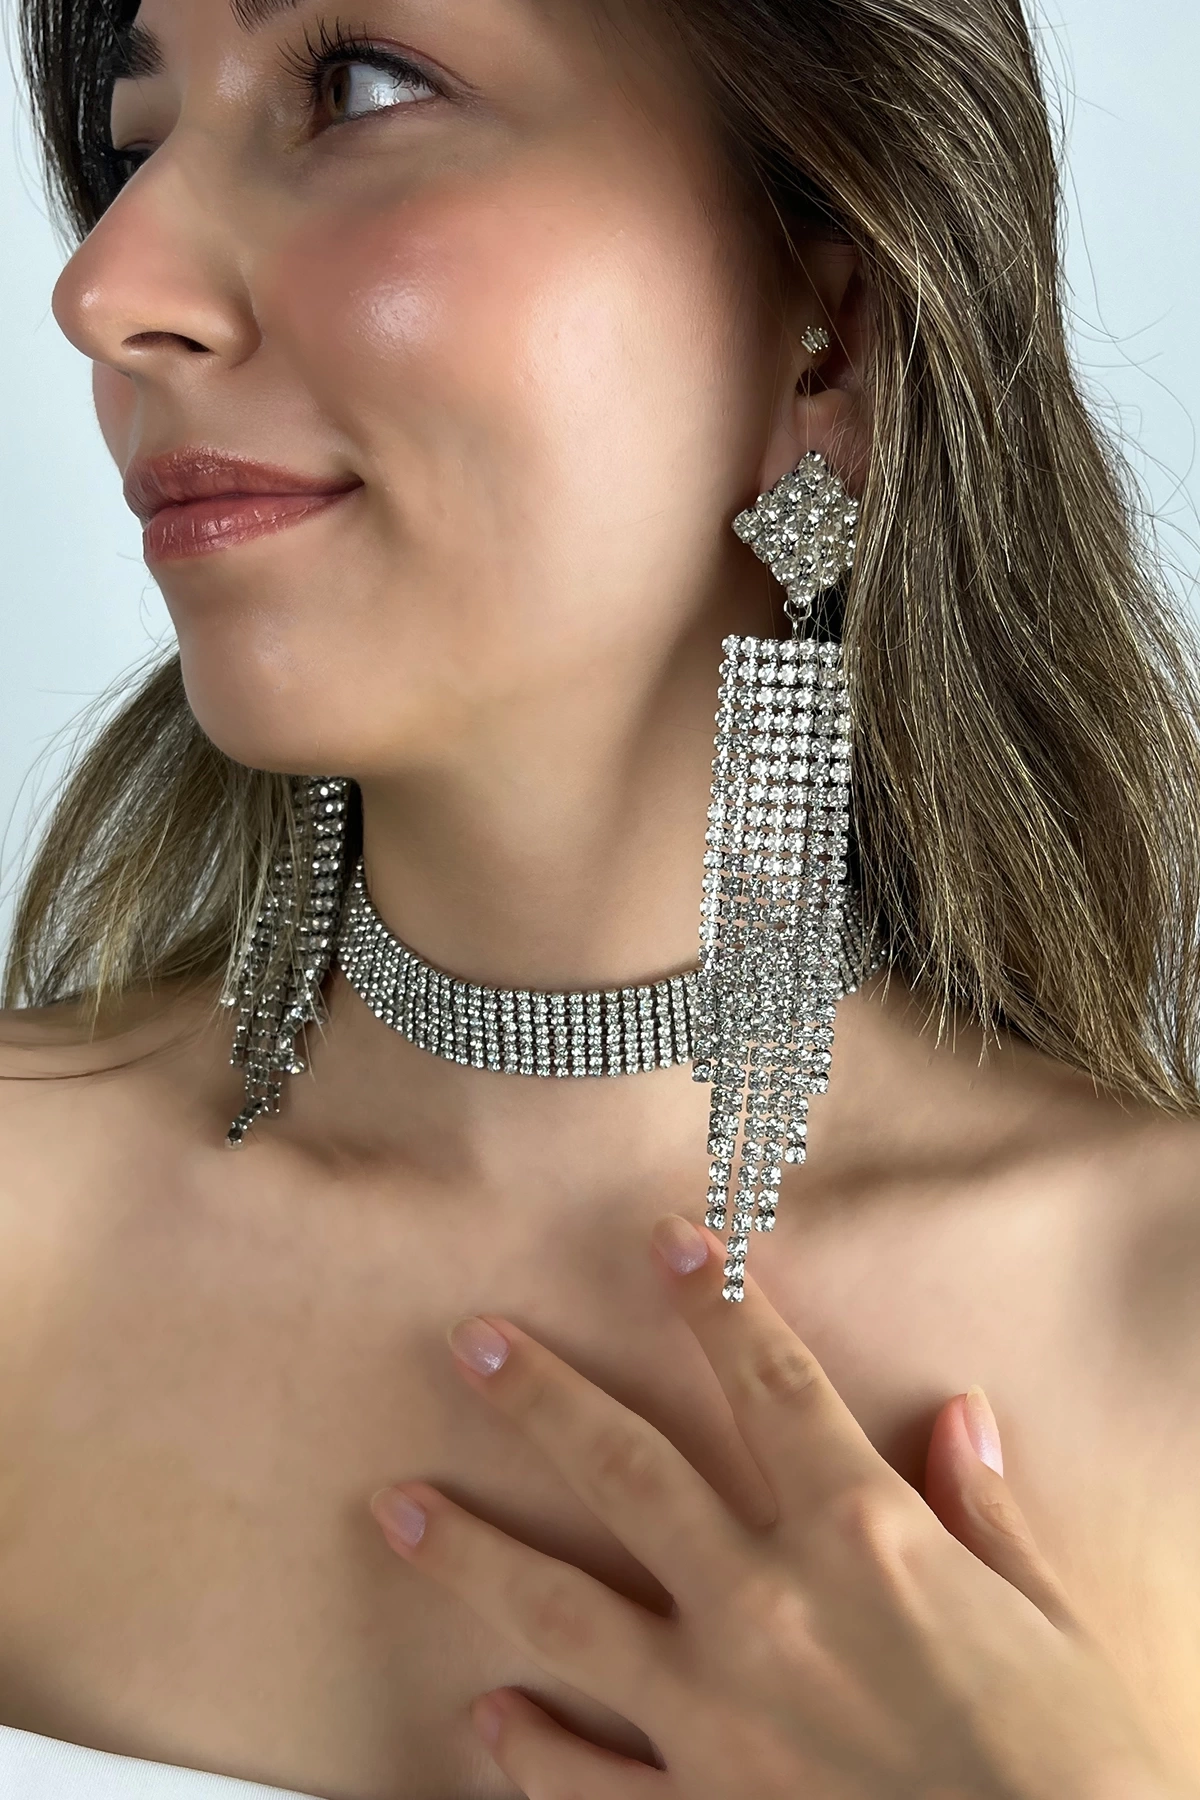 Kadın Favilla Model Kristal Zirkon Taşlı Gümüş Kaplama Kolye + Küpe Günlük Elbise Kombin Takı Seti